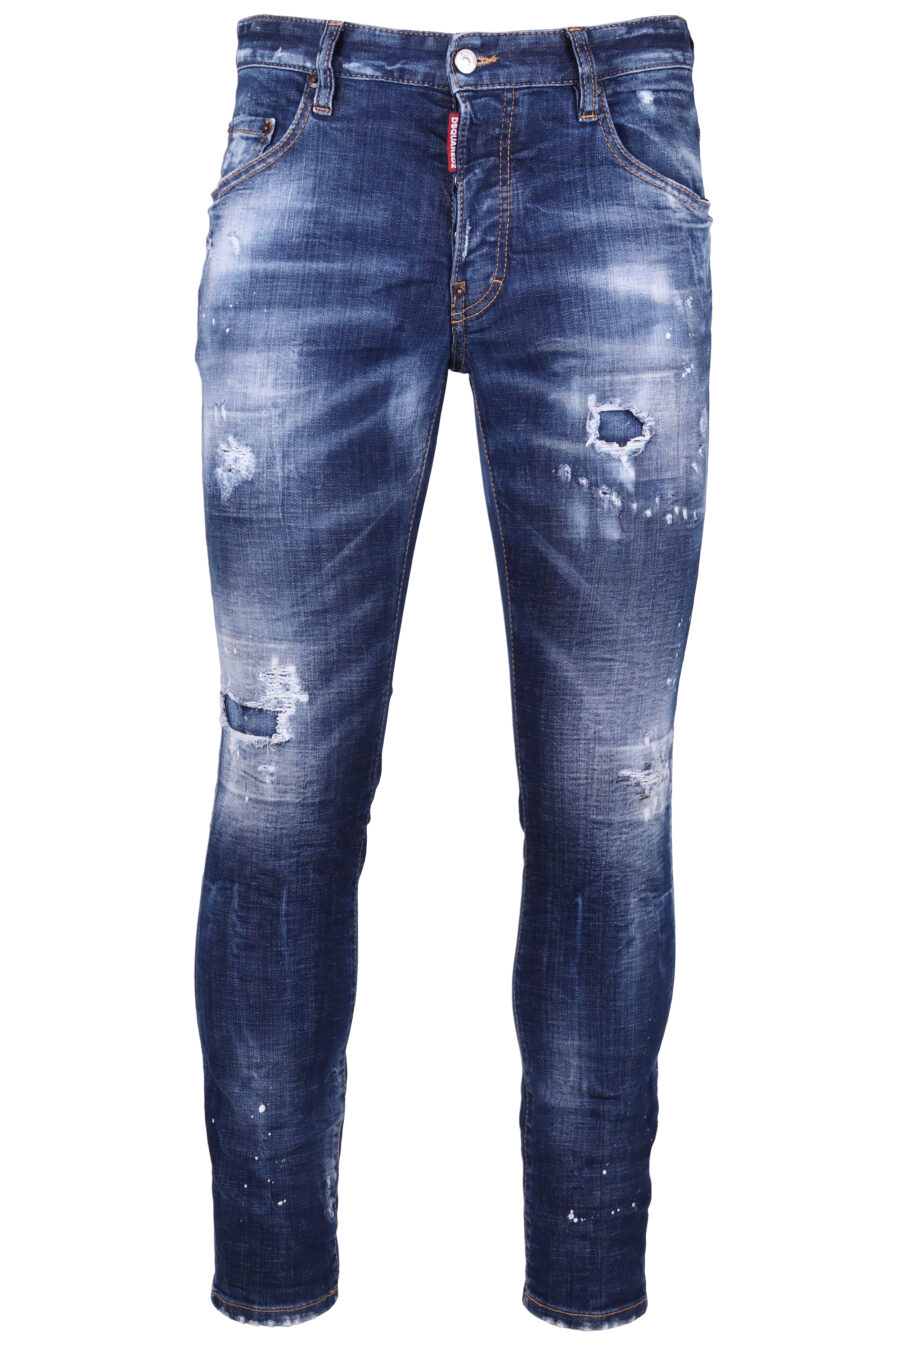 Dsquared2 - Pantalón vaquero azul oscuro skater jean - BLS Fashion